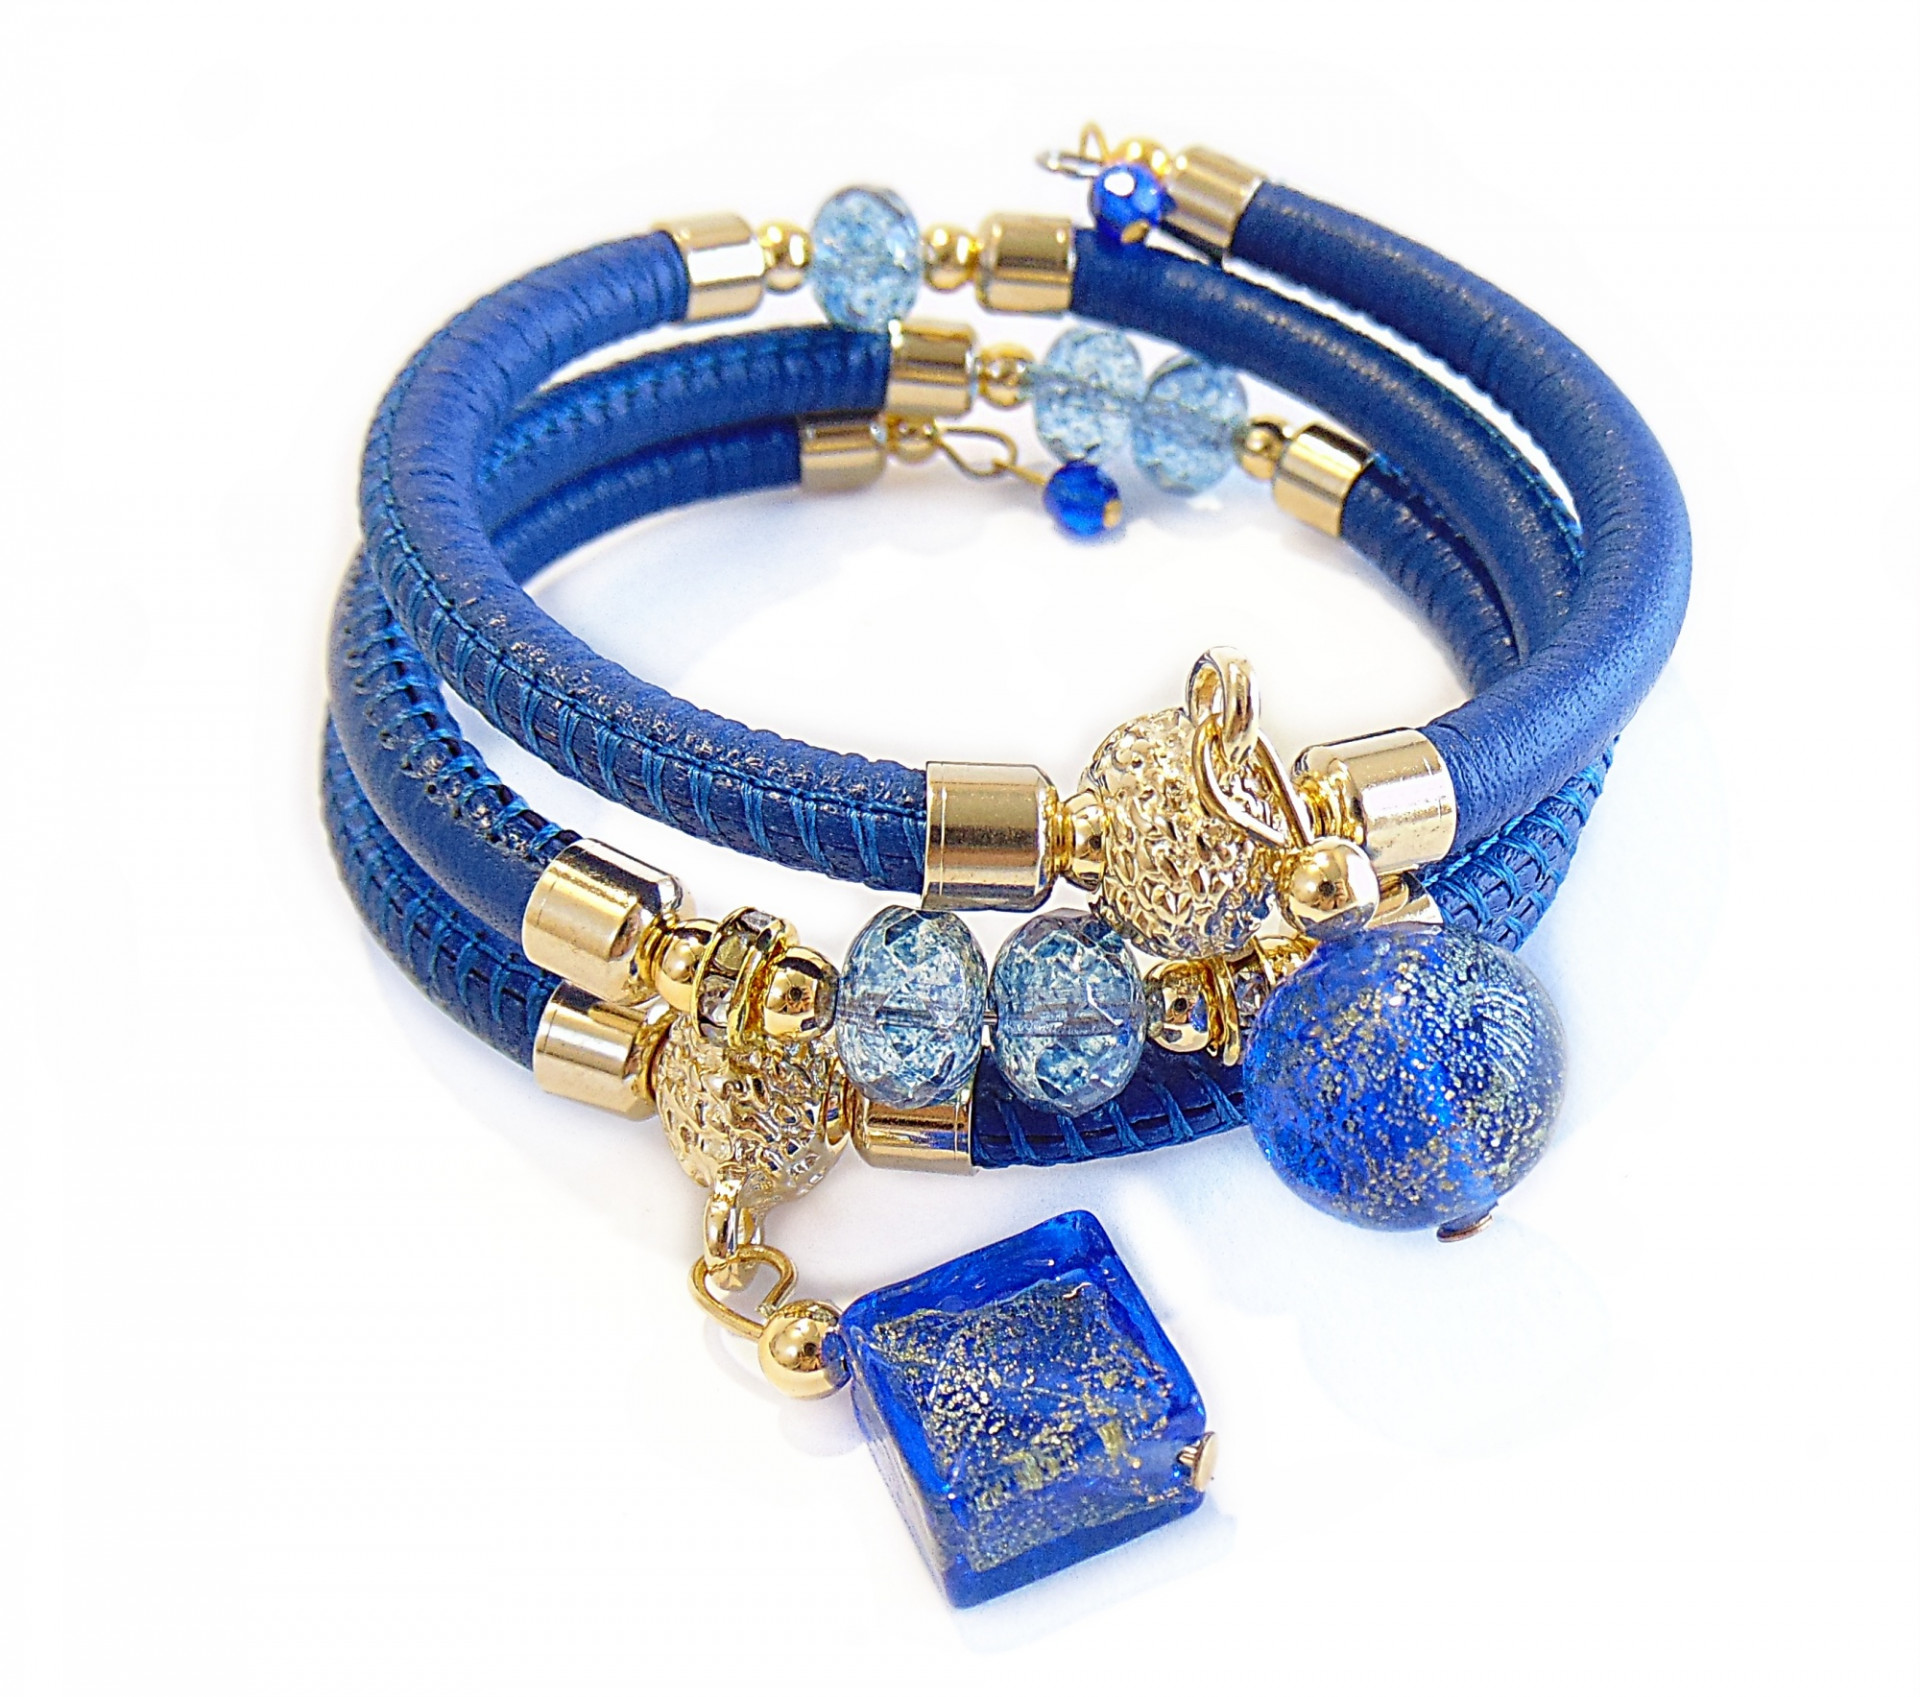 blu bracelet with precious stones